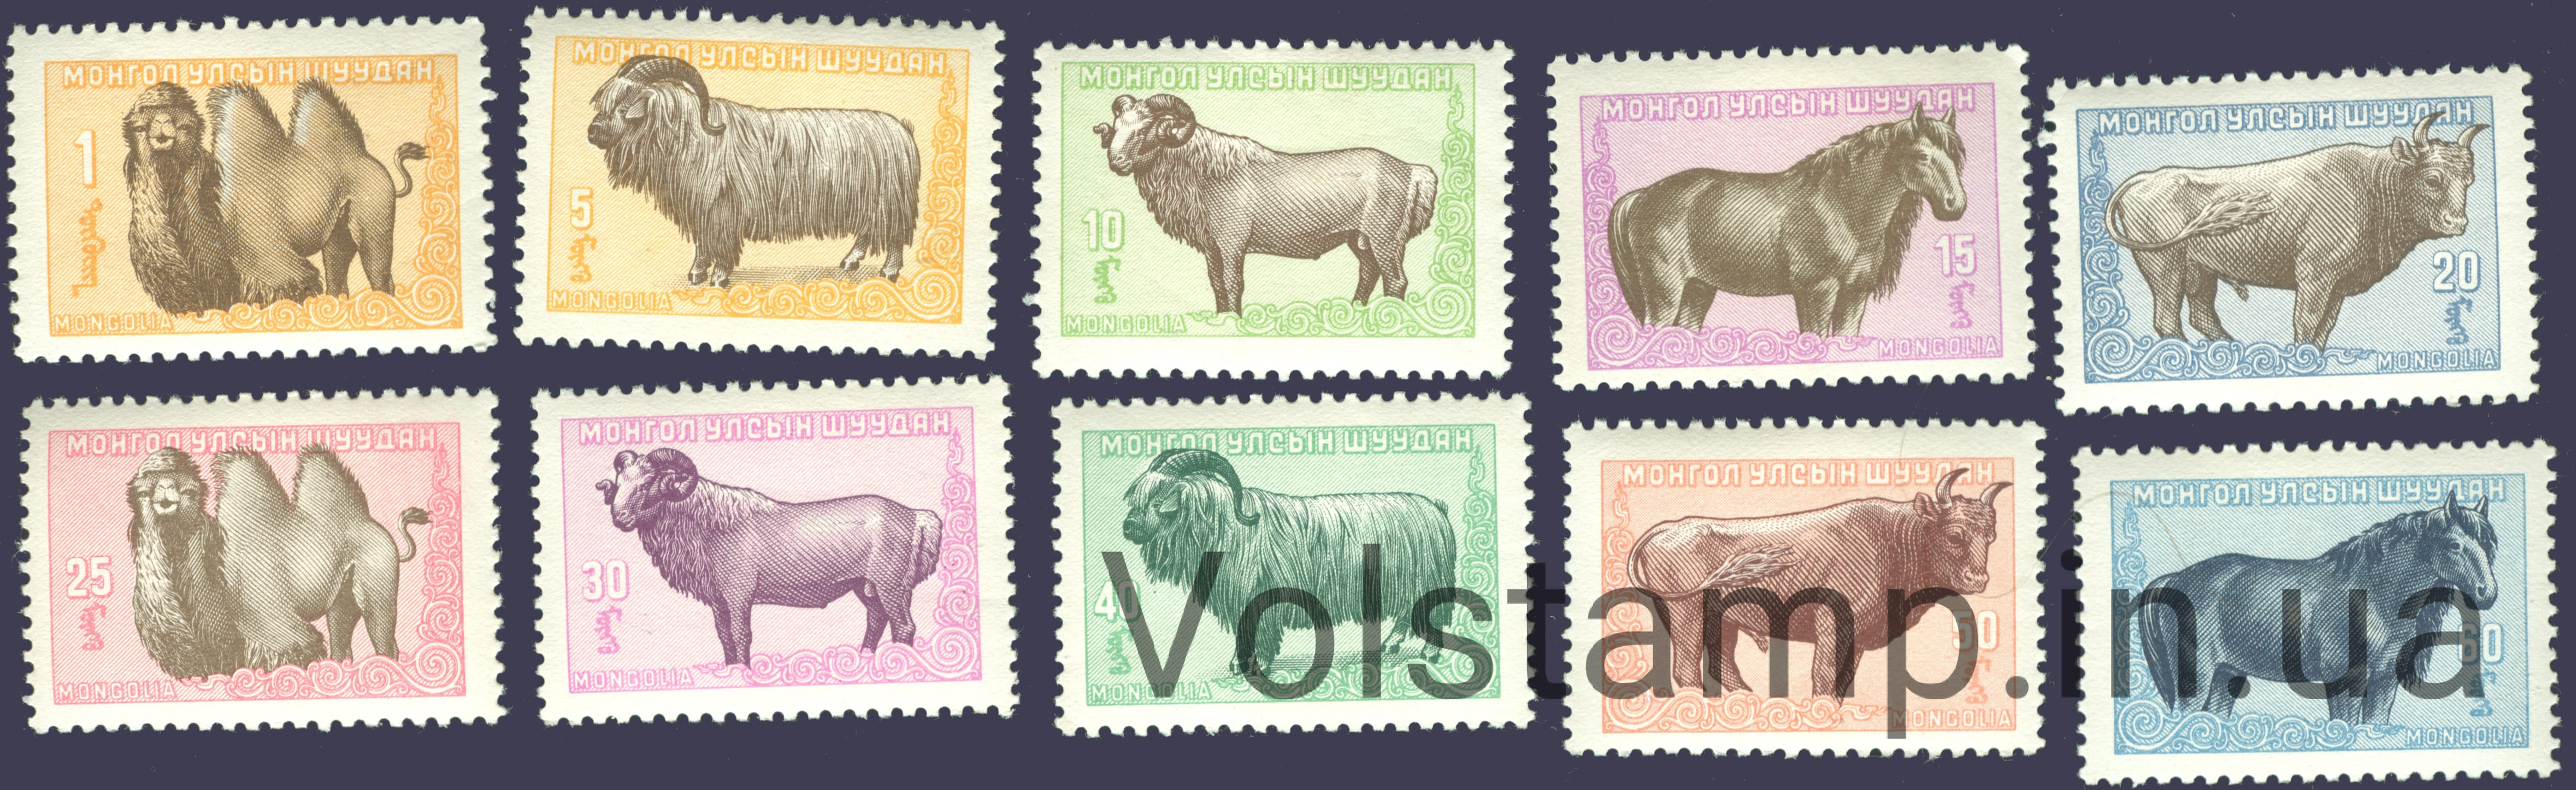 1958 Монголія Серія марок (Коні, верблюди, бики, барани) MNH №138-147